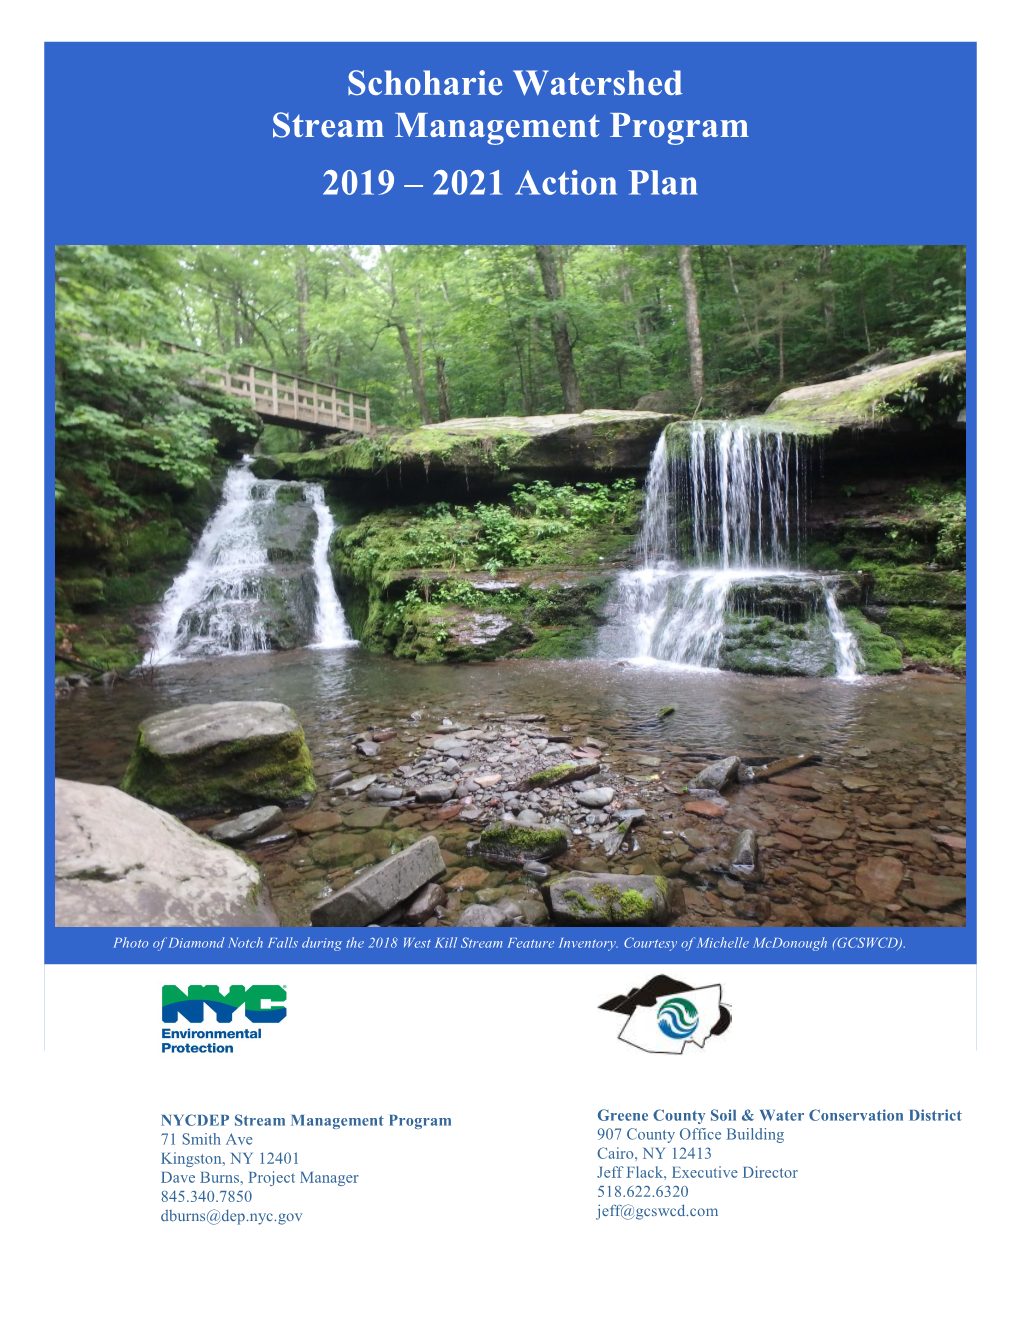 Schoharie Basin Stream Management Program Action Plan, 2019